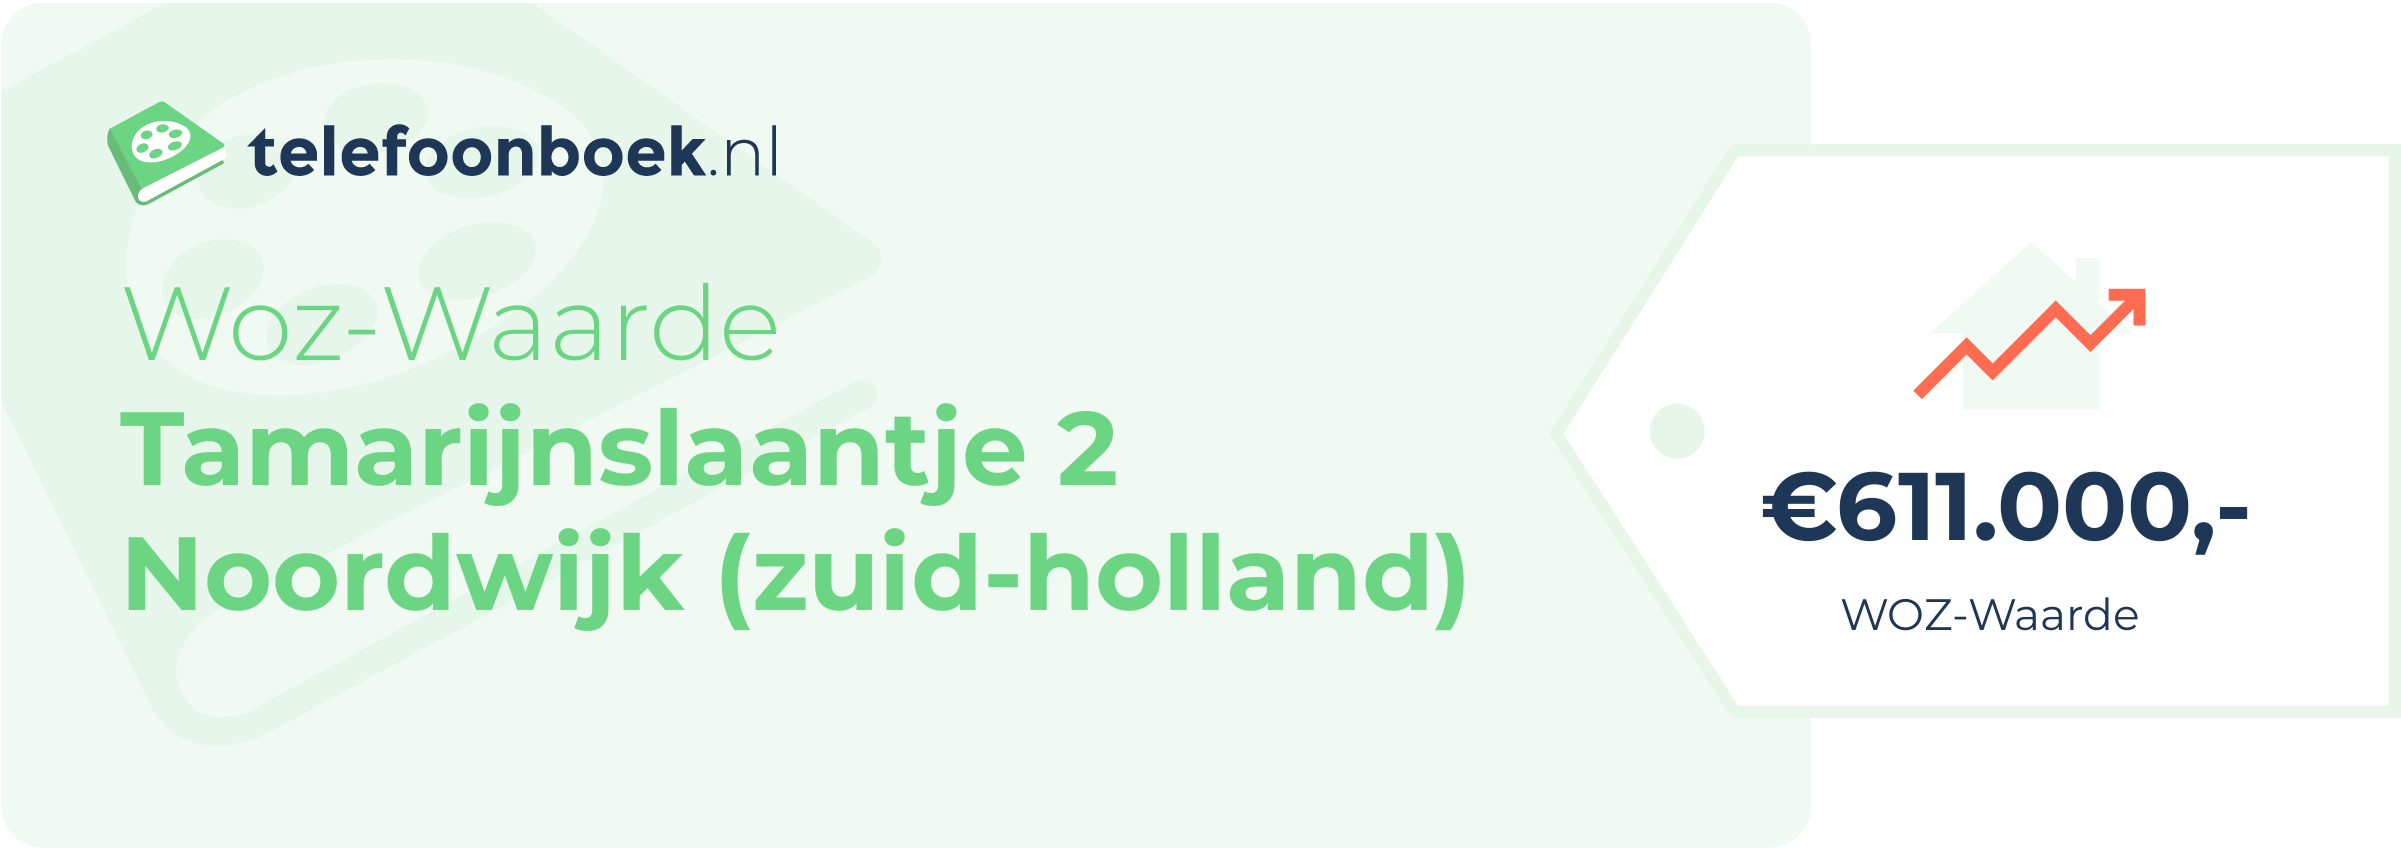 WOZ-waarde Tamarijnslaantje 2 Noordwijk (Zuid-Holland)